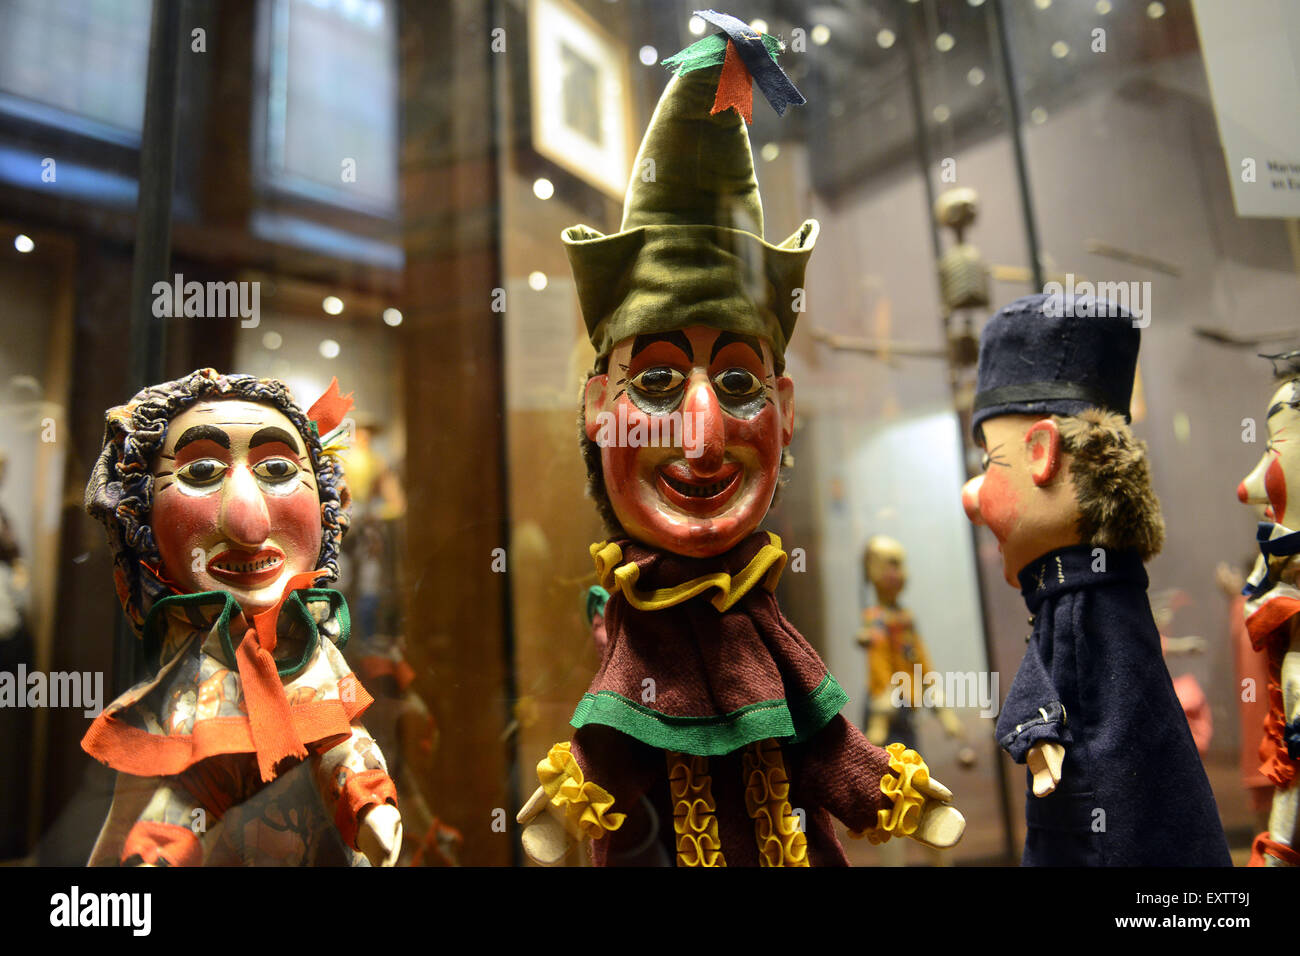 Alte antike Punch & Judy Puppen Puppe gewünsschten an die Marionetten der  Weltmuseum musŽes Gadagne Lyon Frankreich Stockfotografie - Alamy